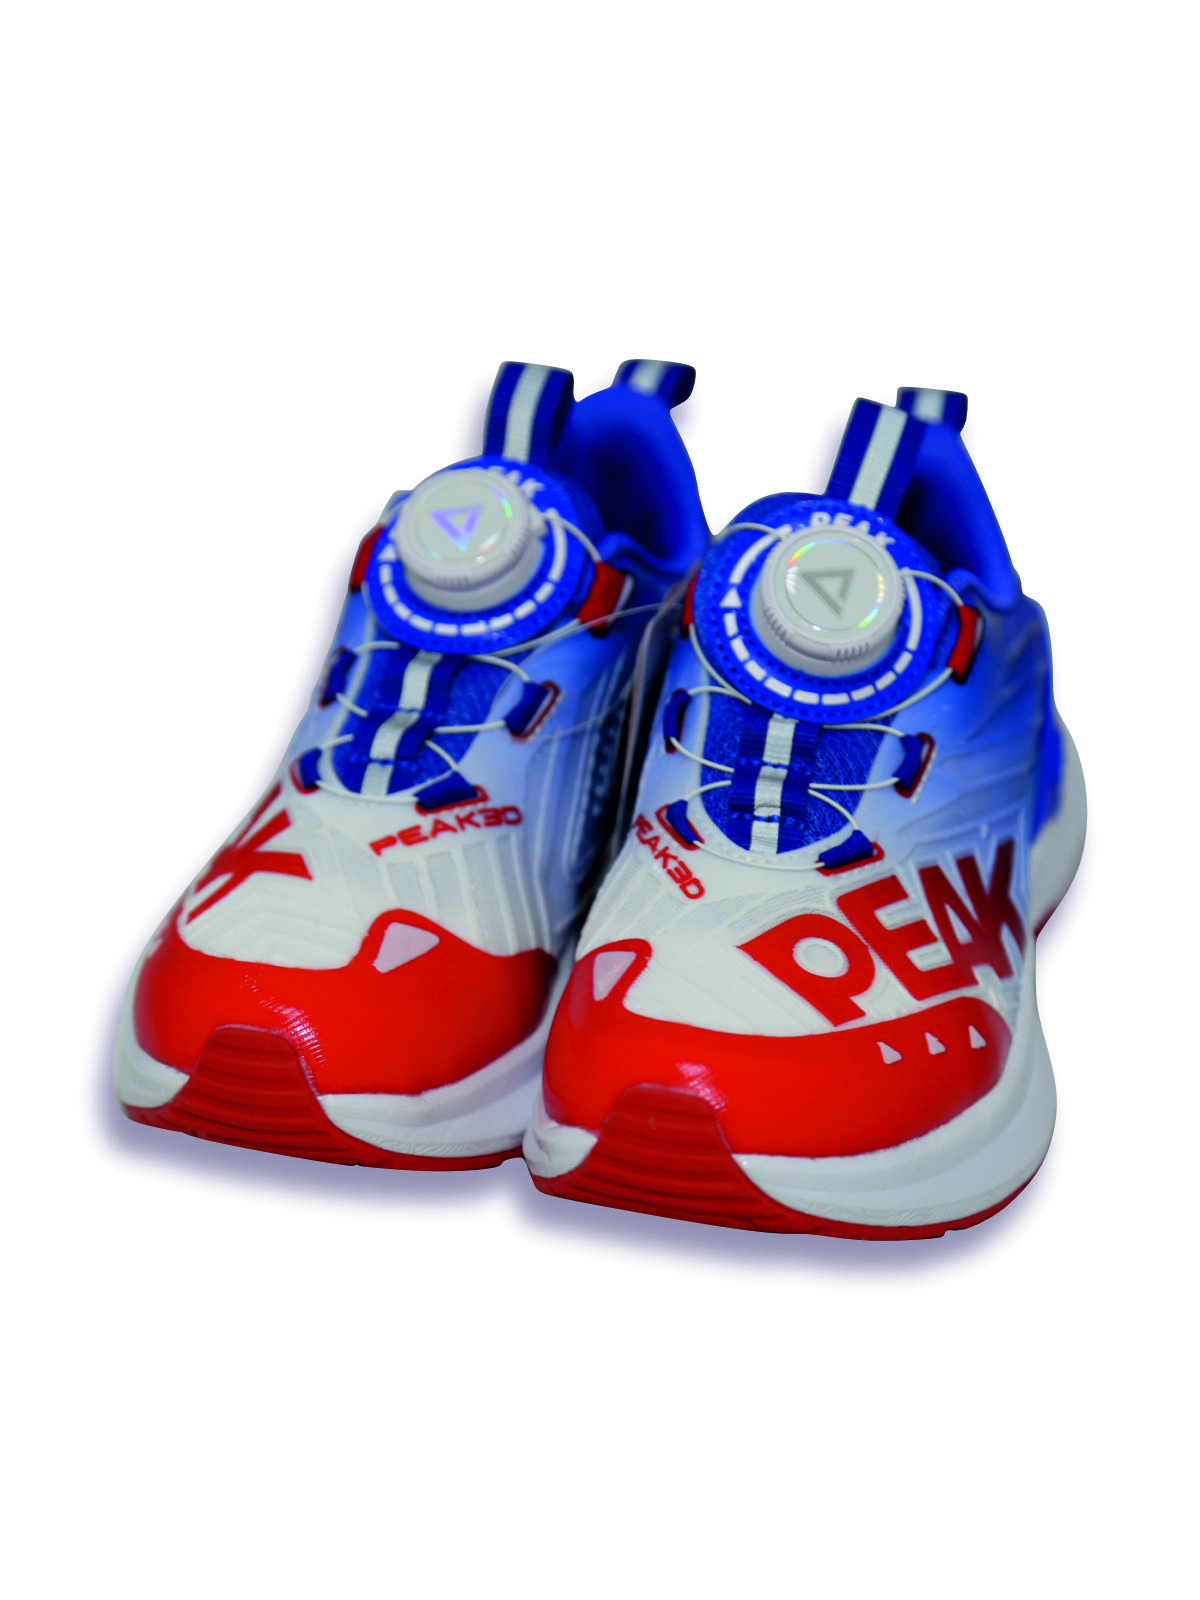 Кроссовки детские PEAK E23, красно-сине-белый, 35 кроссовки детские peak e23 красно сине белый 35